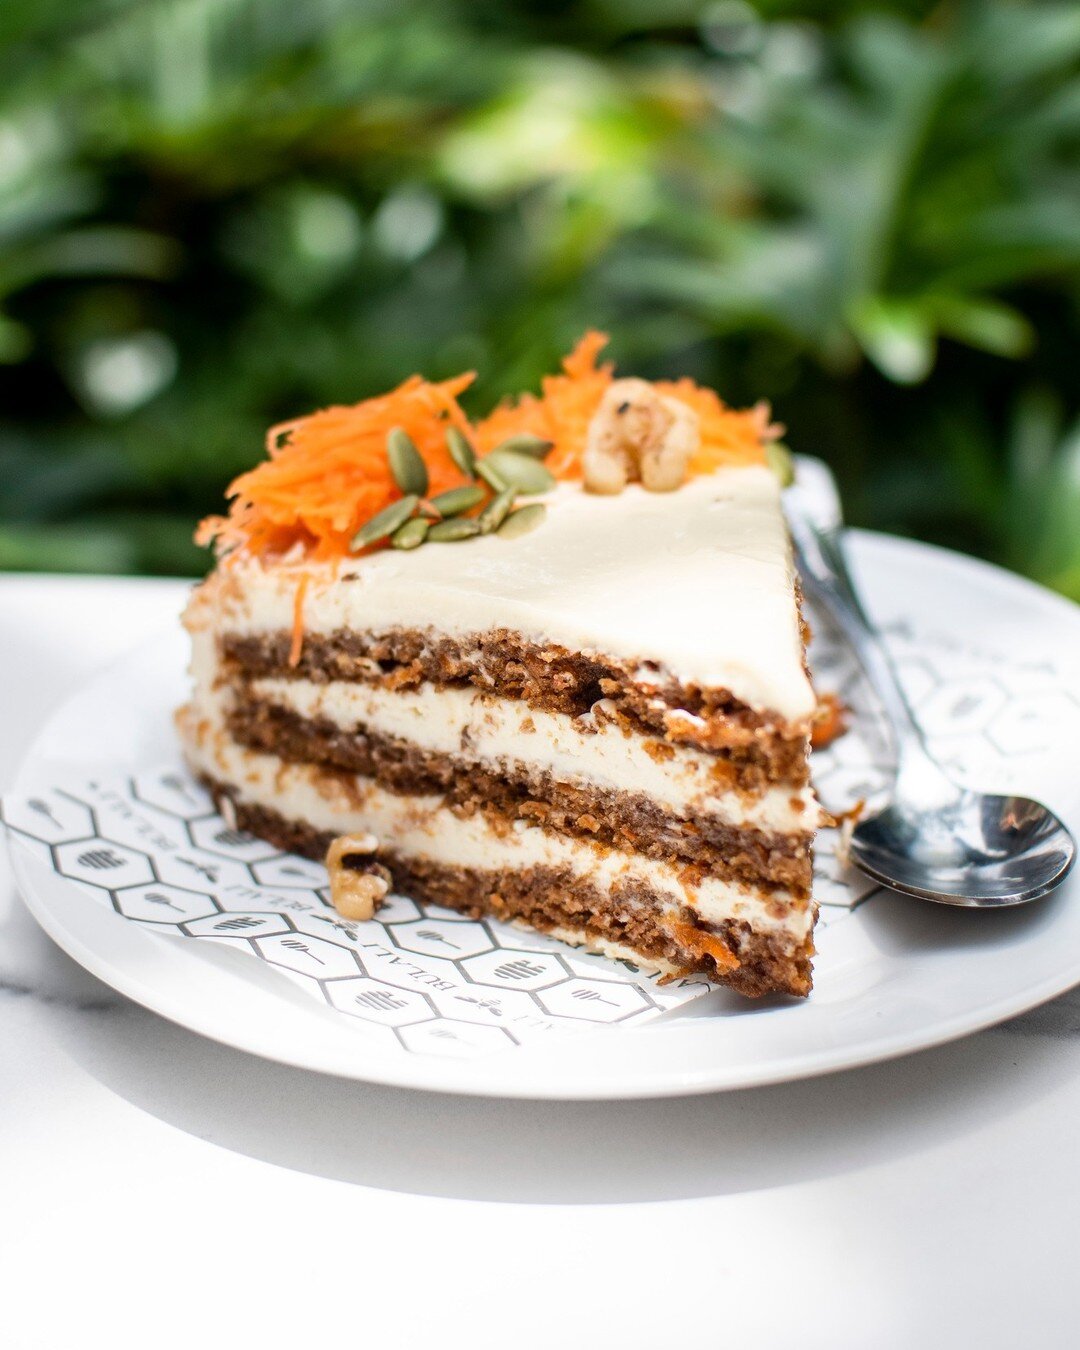 &iexcl;El favorito de muchos! 🥕❤️
Nuestro queque de zanahoria es gluten free, &iquest;lo sab&iacute;as?

#caf&eacute; #b&uacute;lali #cafeter&iacute;a #reposter&iacute;a #carrotcake #quequedezanahoria